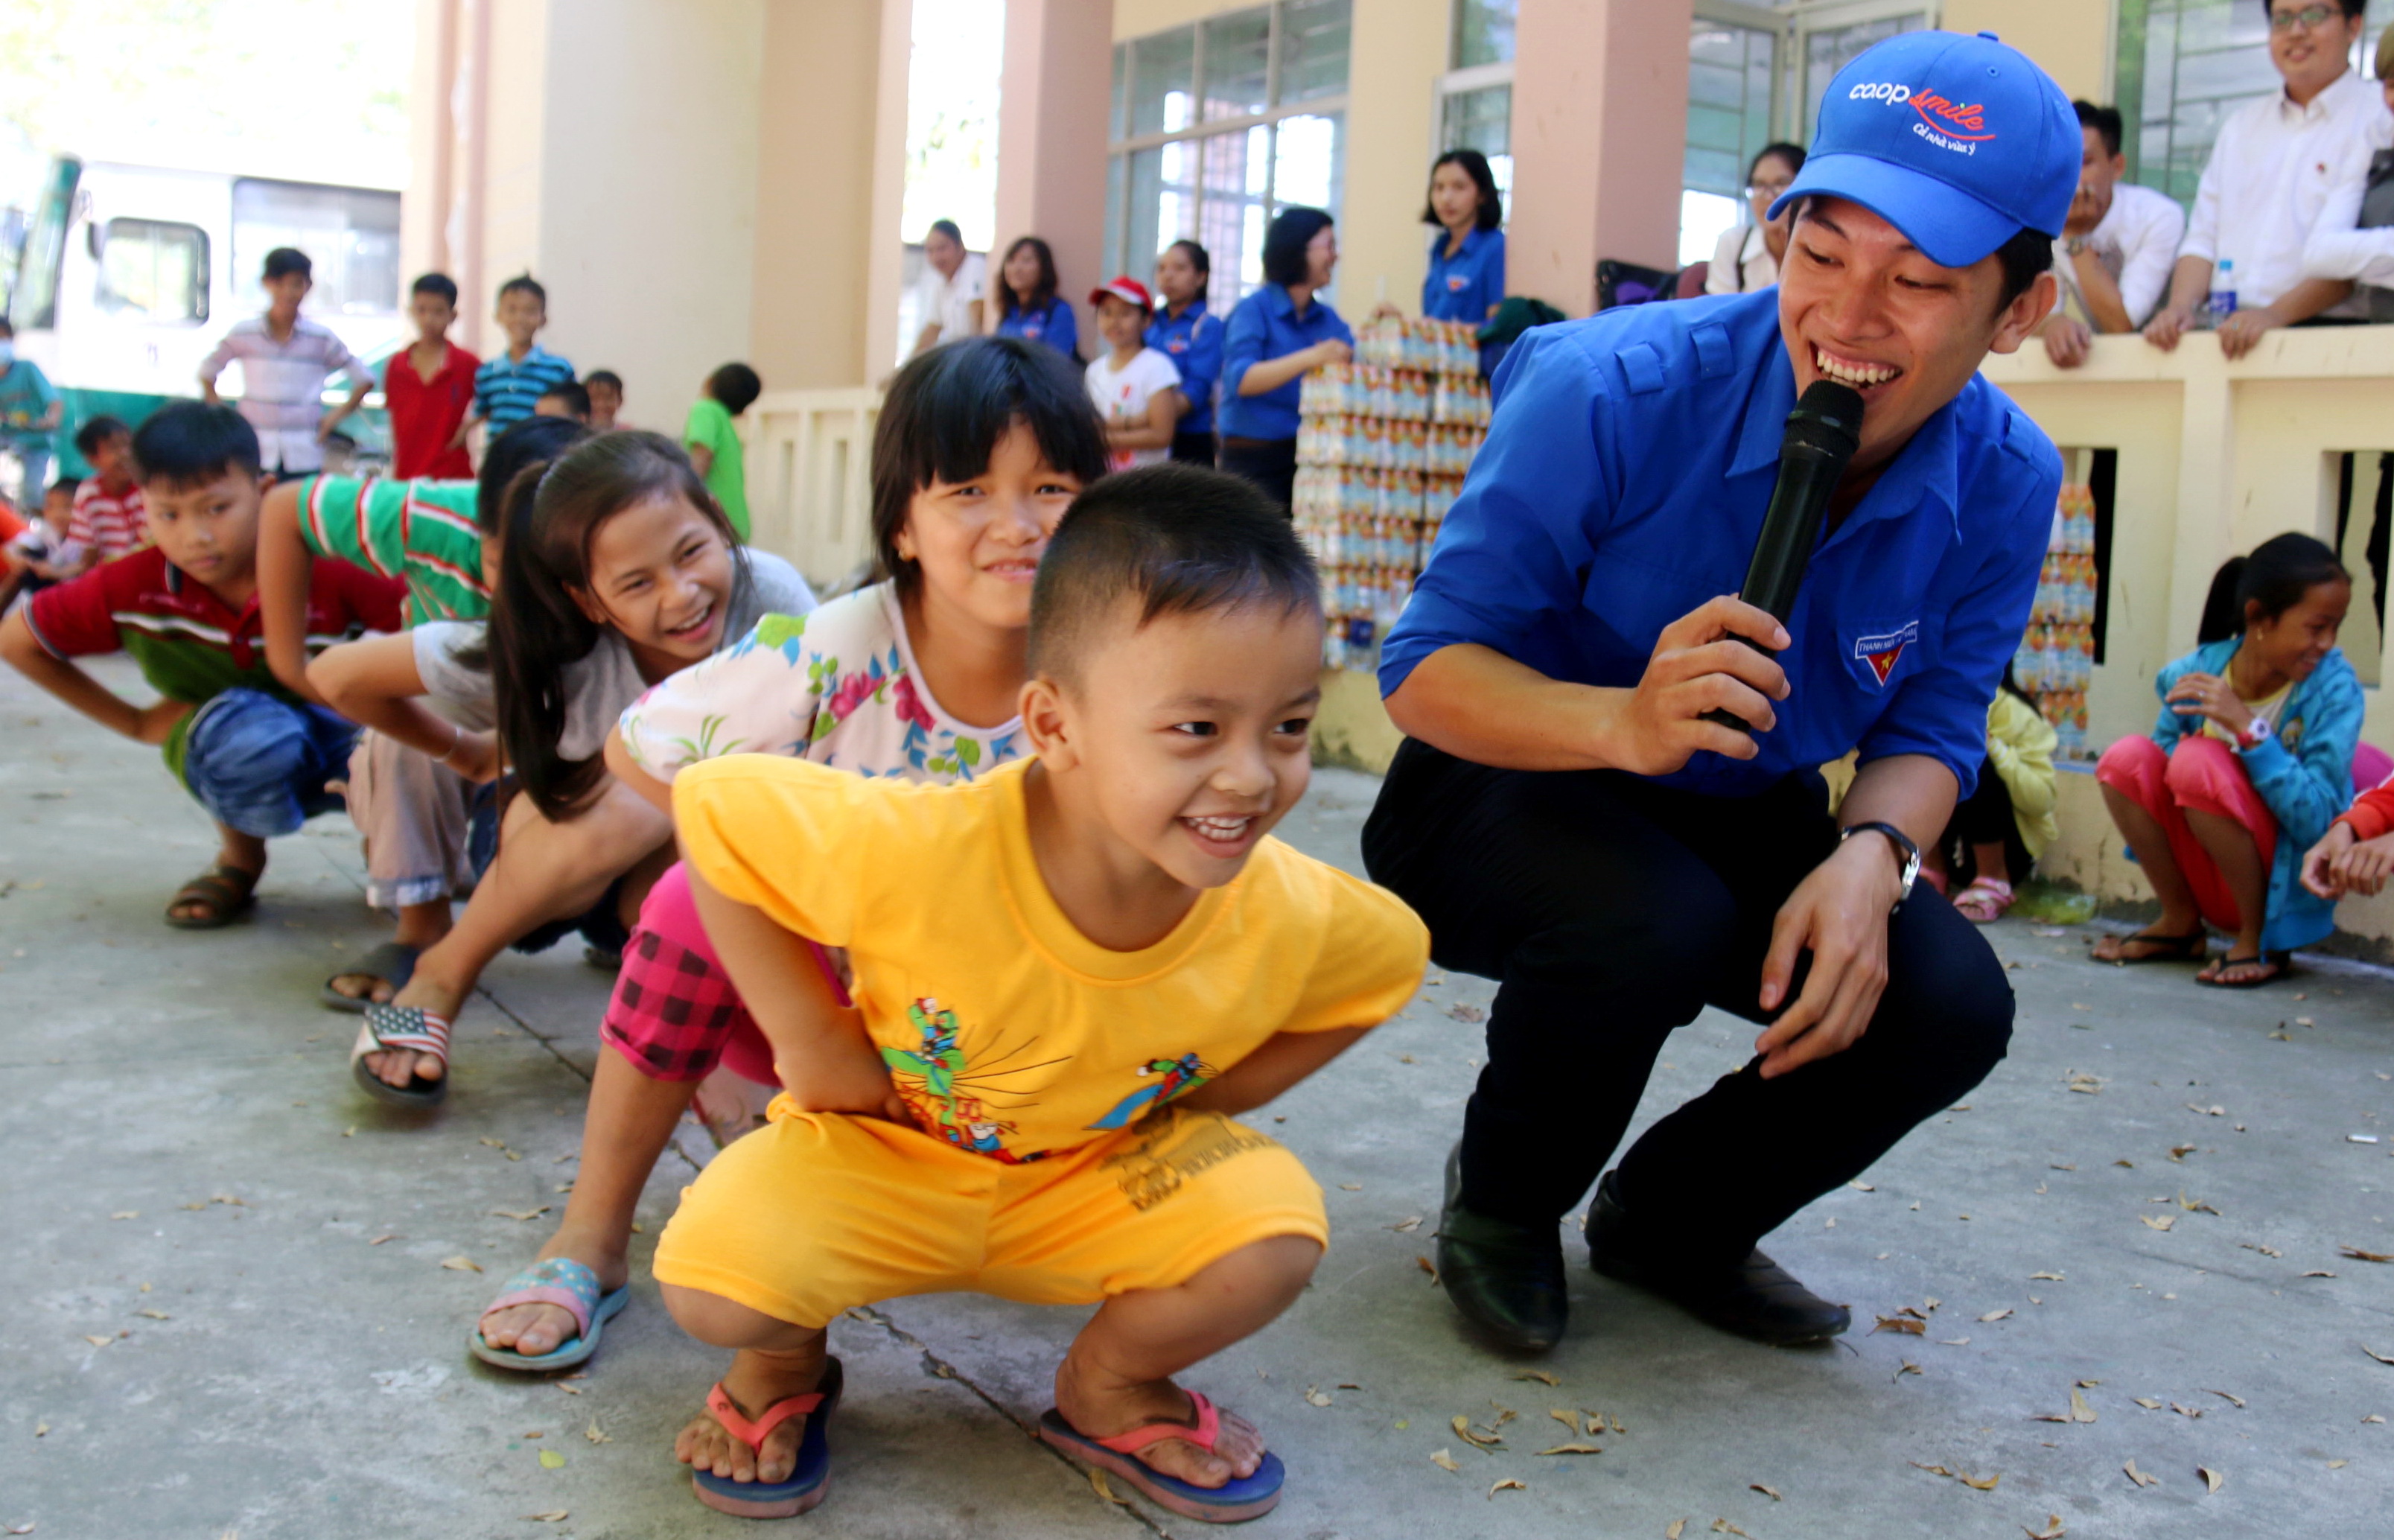 Các em thiếu nhi tại huyện Cần Giờ (TP.HCM) cùng chơi với các anh chị đoàn viên trong ngày sinh nhật Đoàn - Ảnh: Ngọc Hiển